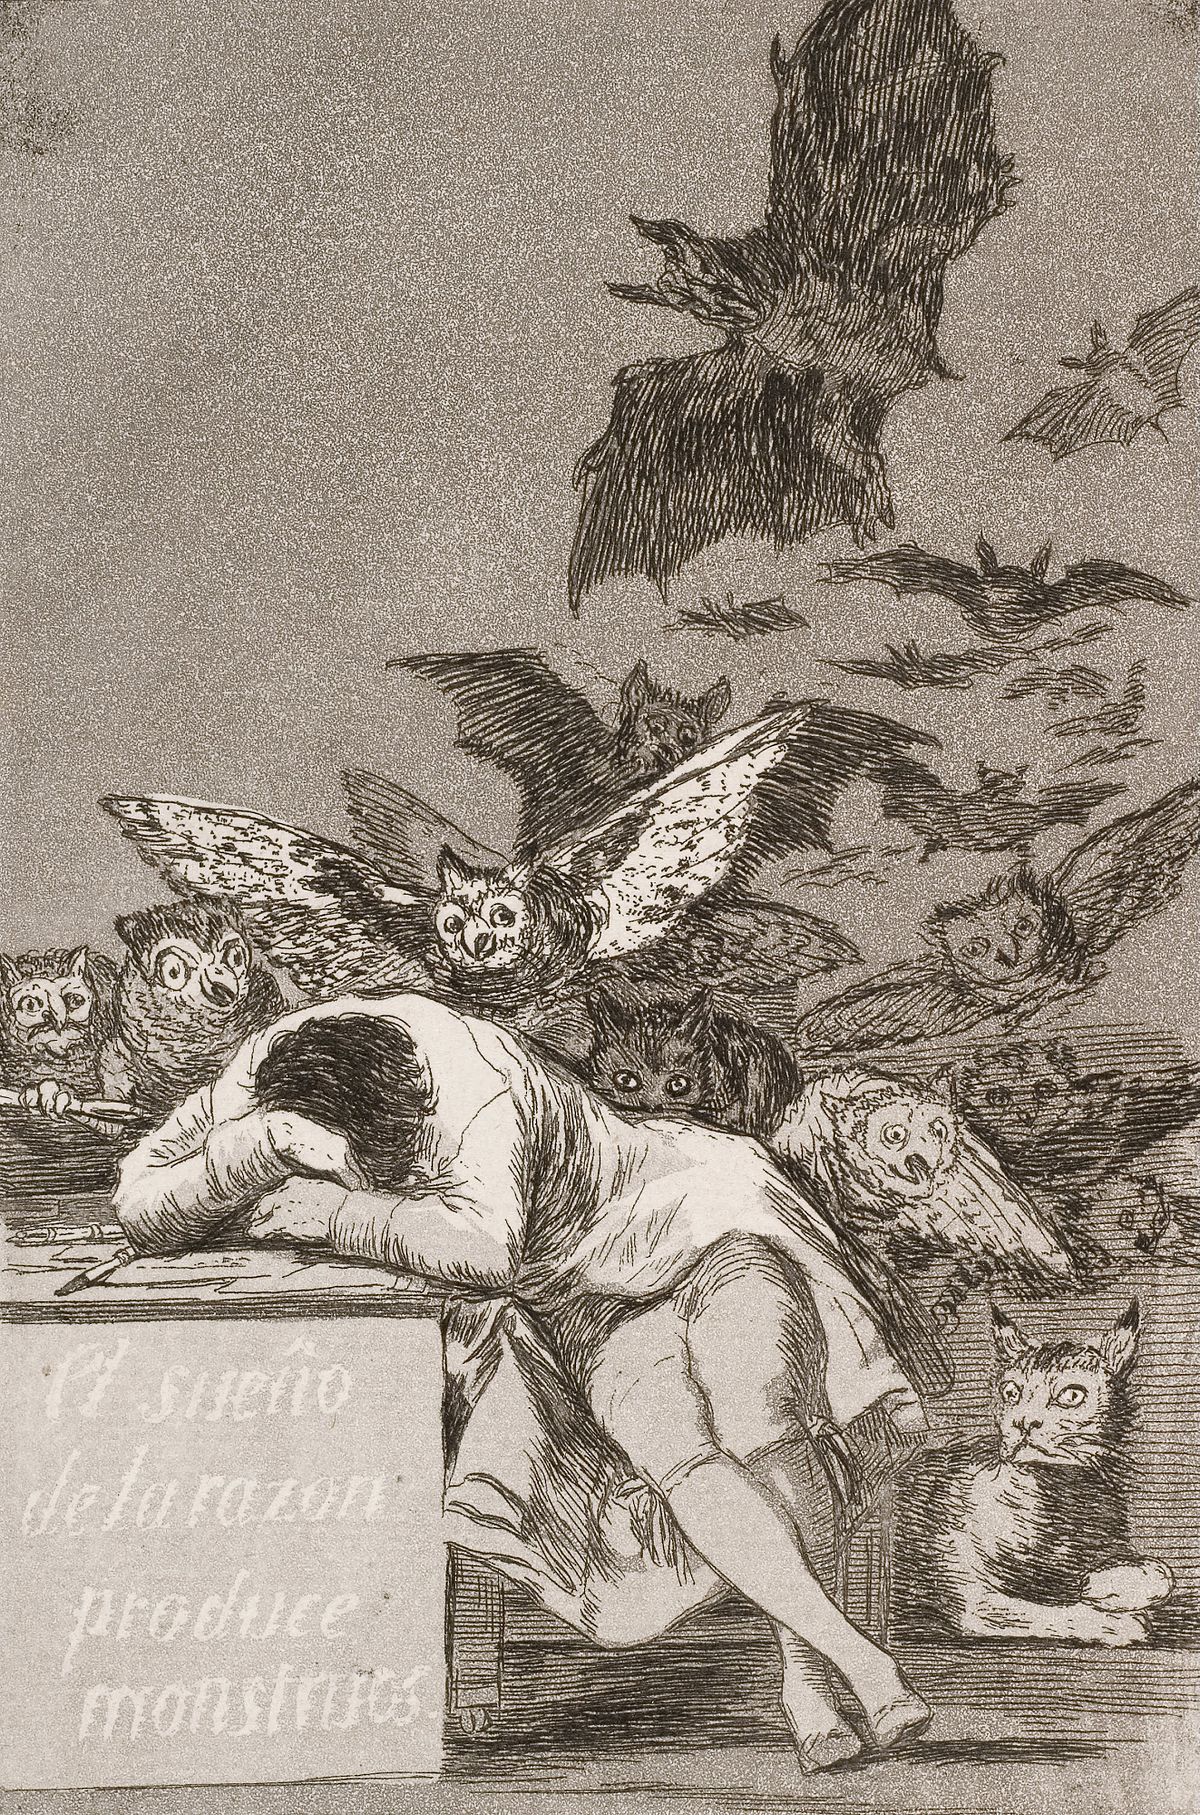 A Razão Adormecida Produz Monstros by Francisco Goya - 1799 - 21.6 x 15.2 cm coleção privada